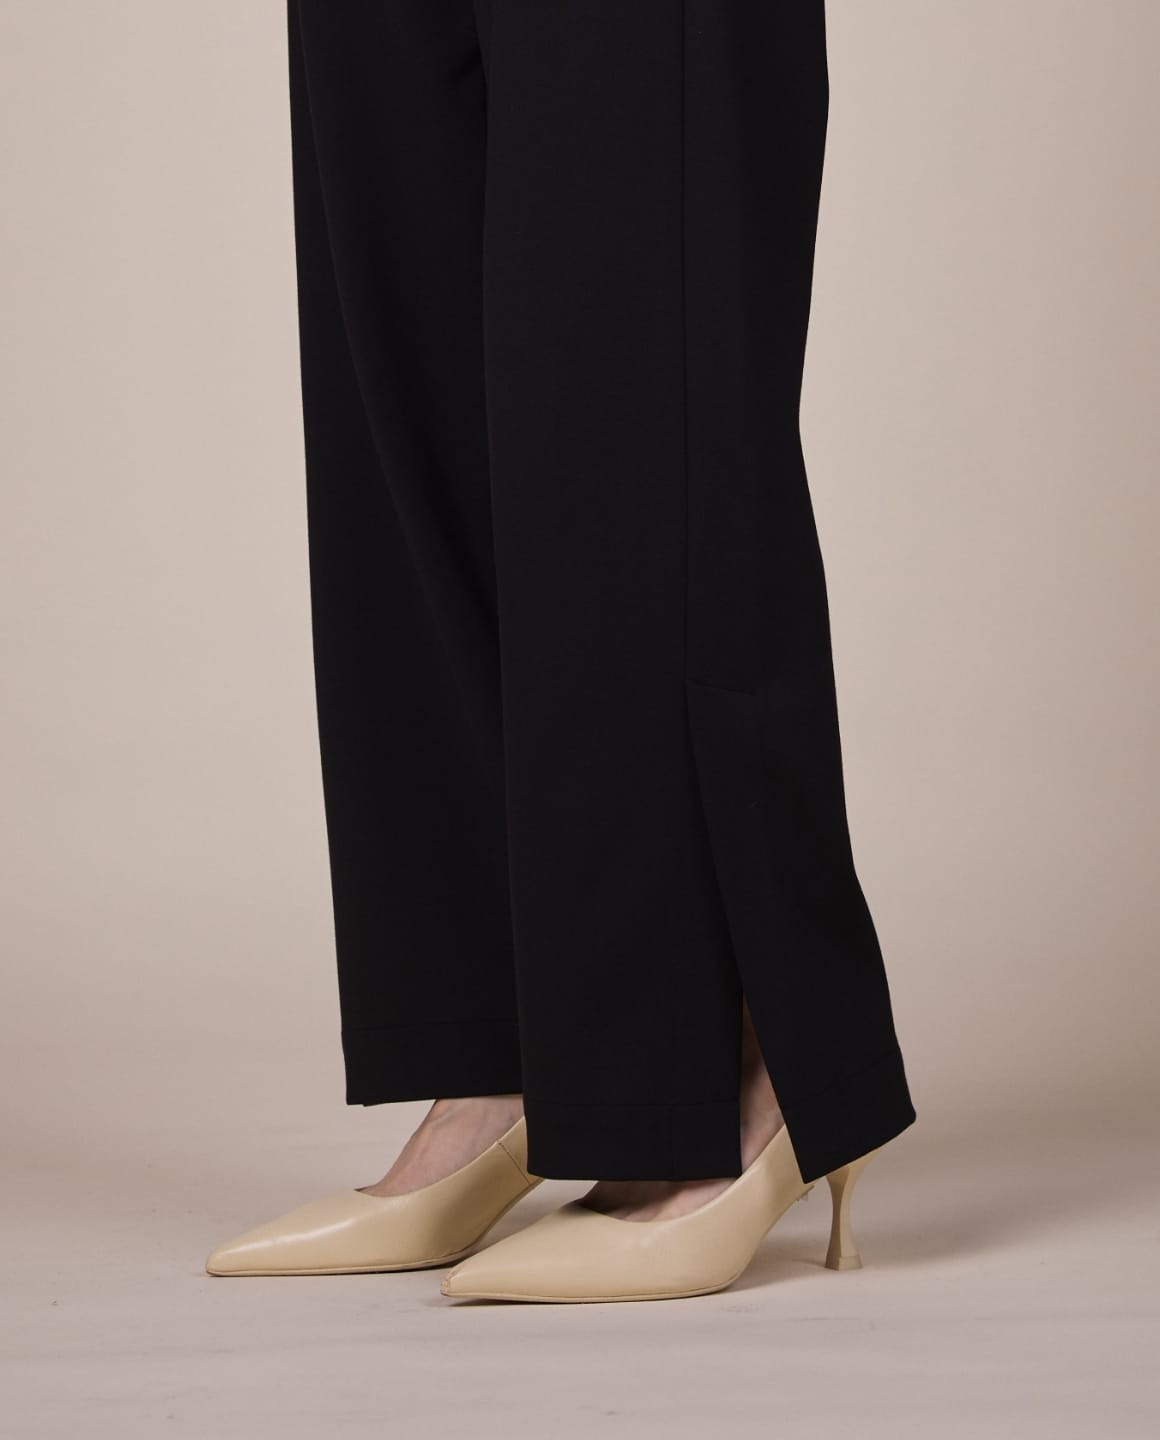 ノーカラージレブラック、スリットパンツブラックを着用している女性モデルの足元写真